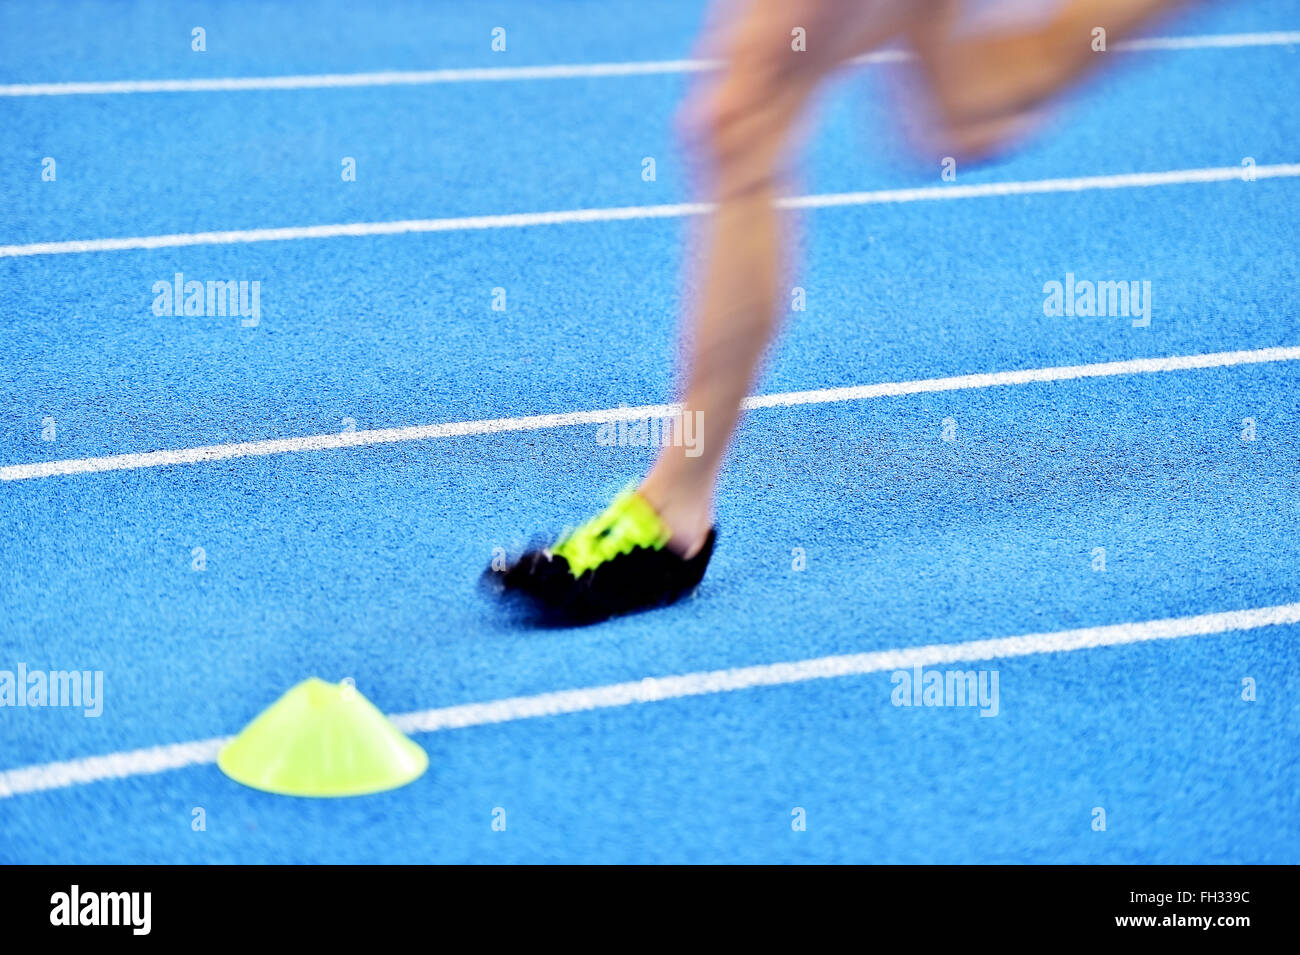 Verschwommene Athleten durch eine langsame Kamera Verschlusszeit auf blaue Sprint Track zu konkurrieren Stockfoto